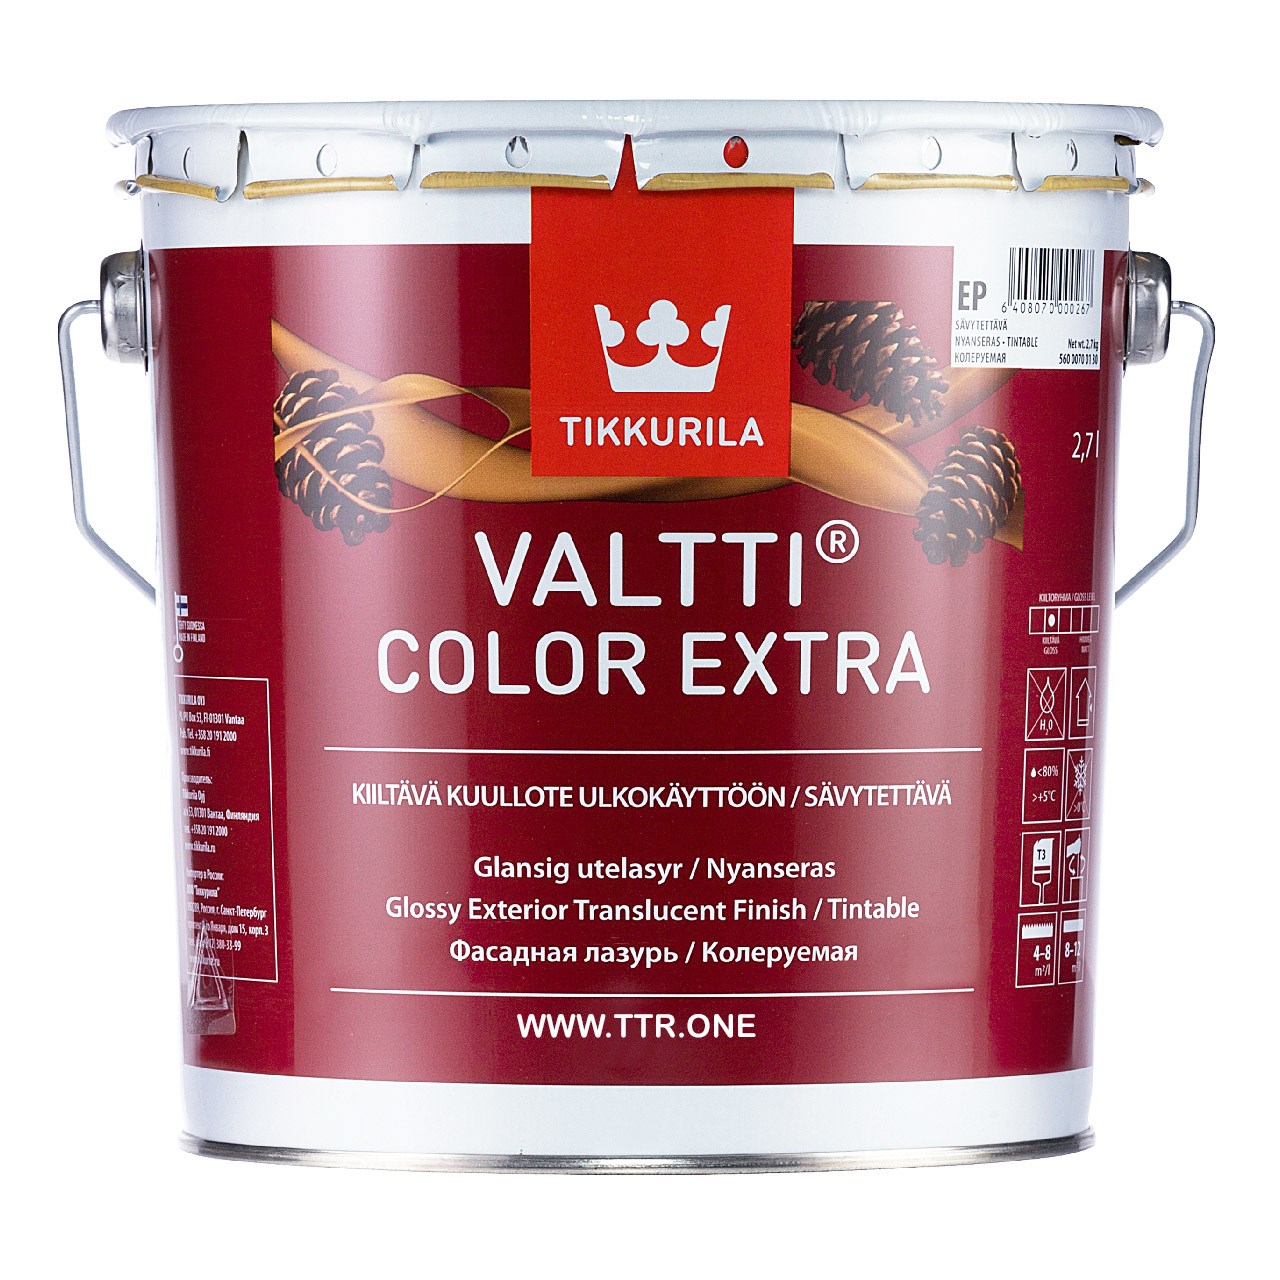 رنگ پایه روغن تیکوریلا مدل Valtti Color EXTRA 5073 حجم 3 لیتر